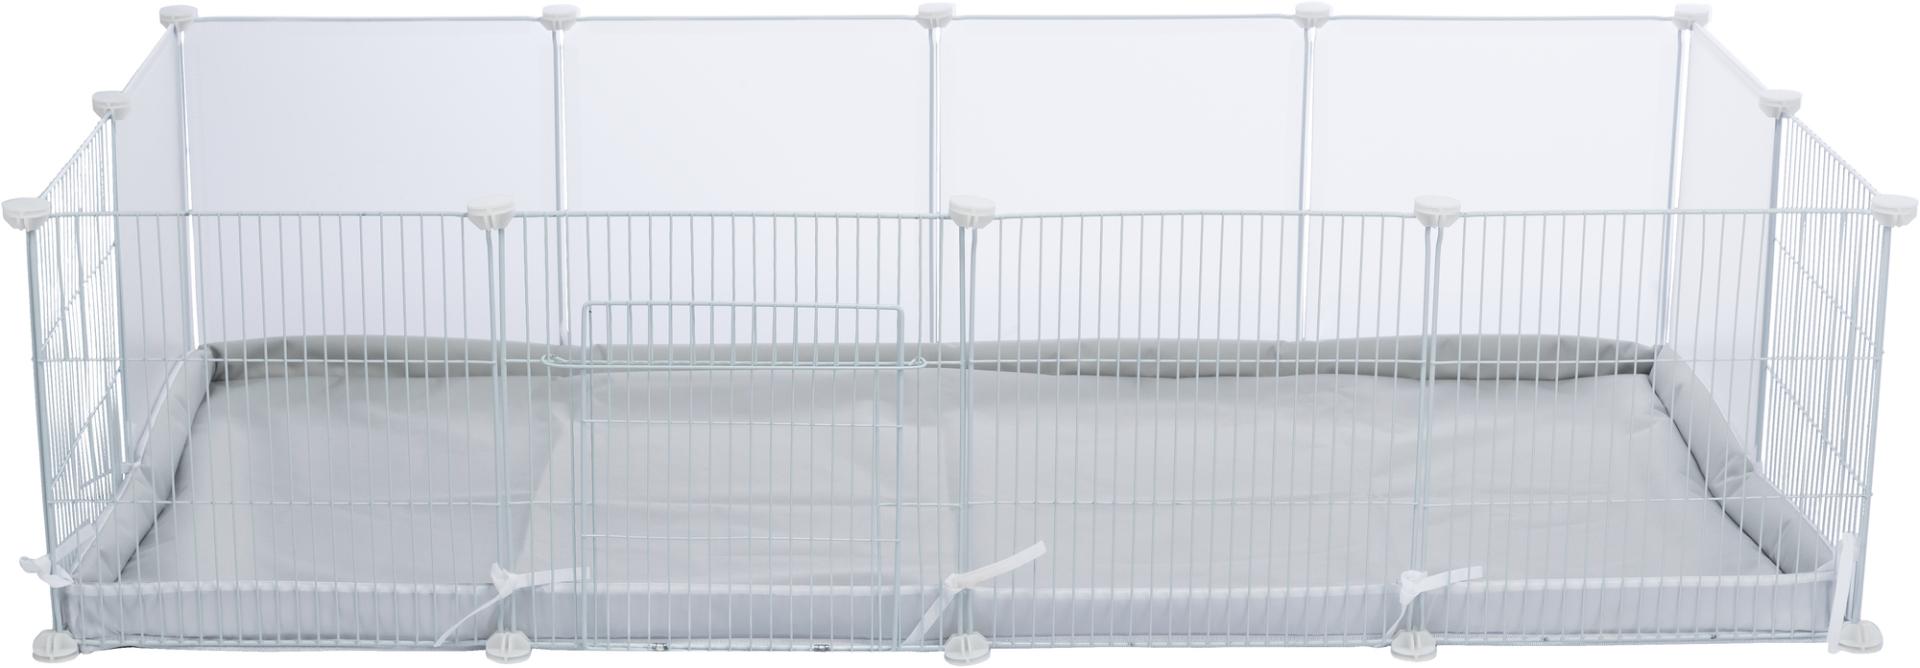 TRIXIE Boden für Indoor Freilaufgehege, Metall / Kunststoff, 140 x 35 x 70 cm, weiß; 140 x 70 cm, grau / weiß